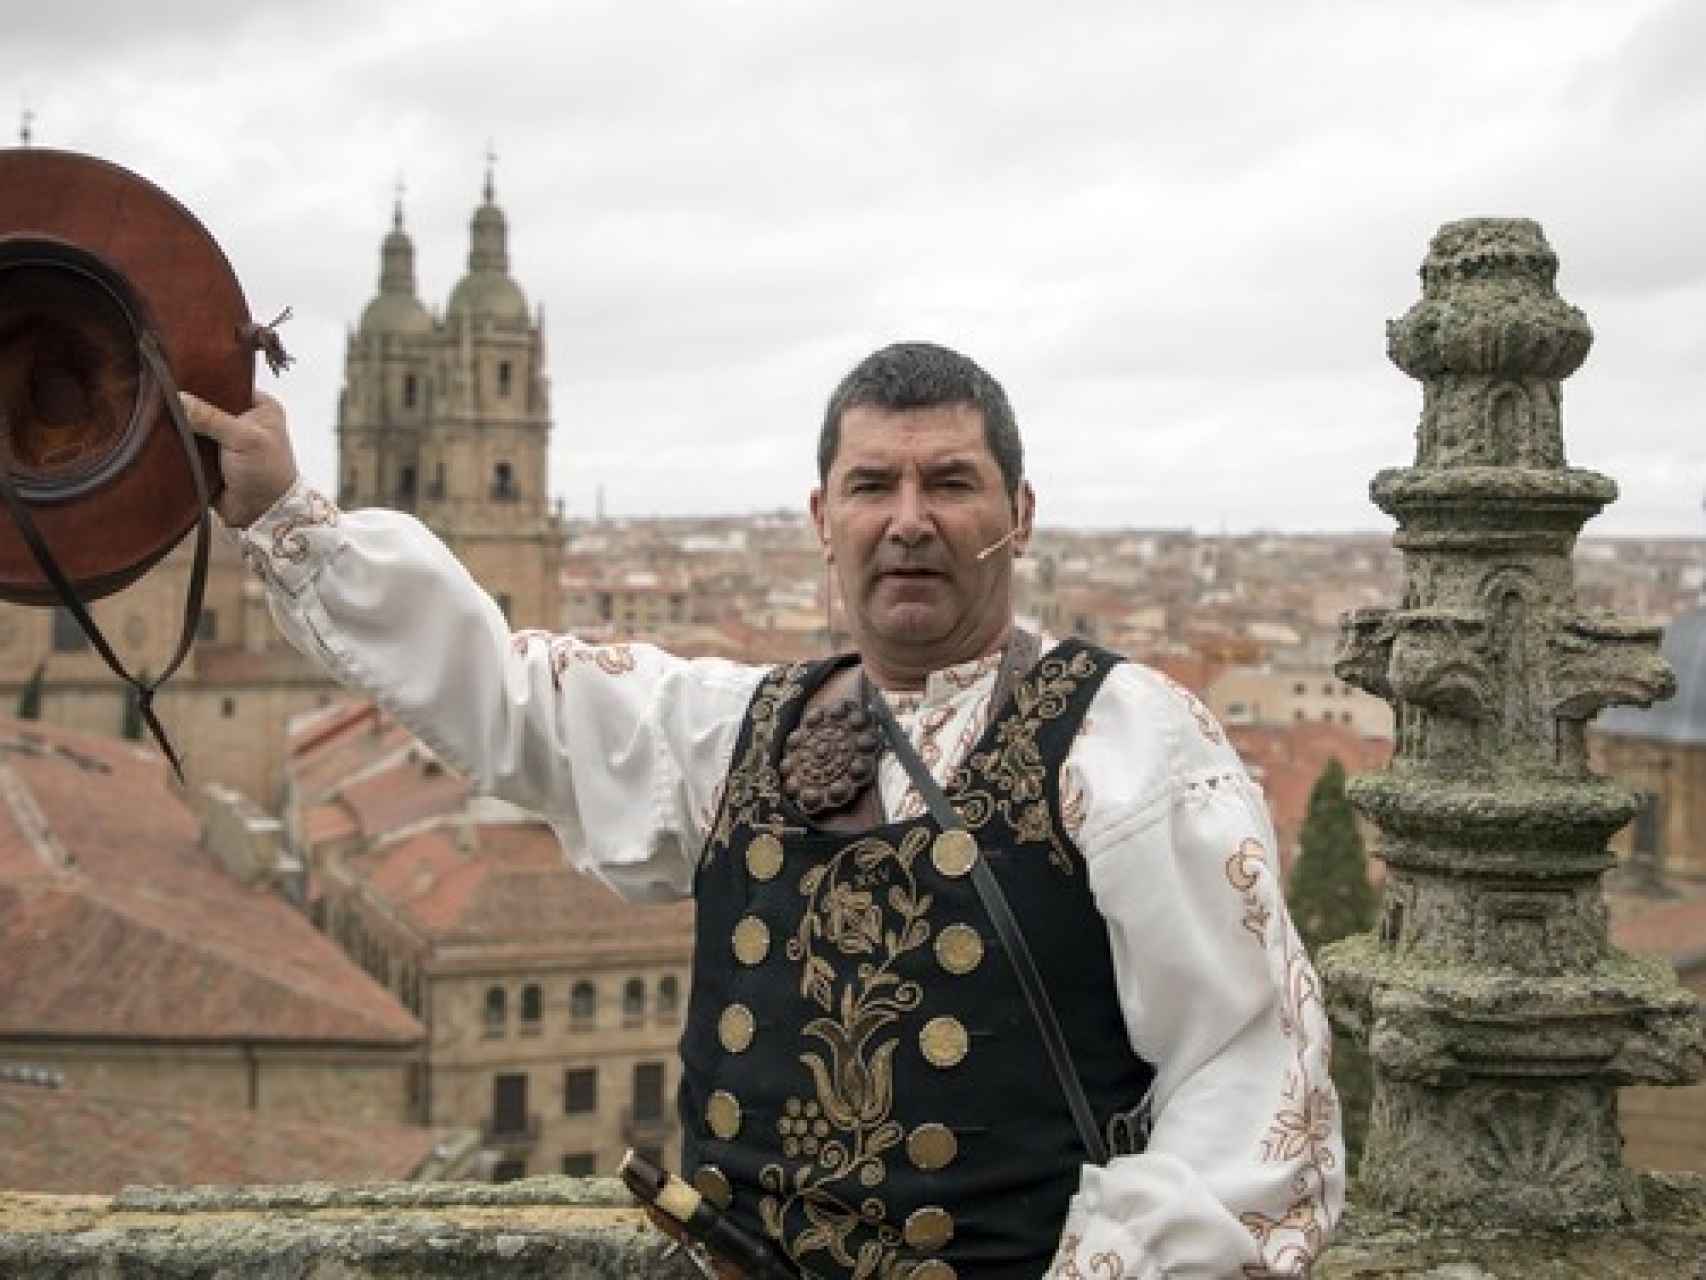 Susana Martín / ICAL. El folclorista salmantino Ángel Rufino de Haro, ''El Mariquelo'', realiza la XXXV edición de su tradicional ascensión a la torre de la Catedral de Salamanca.